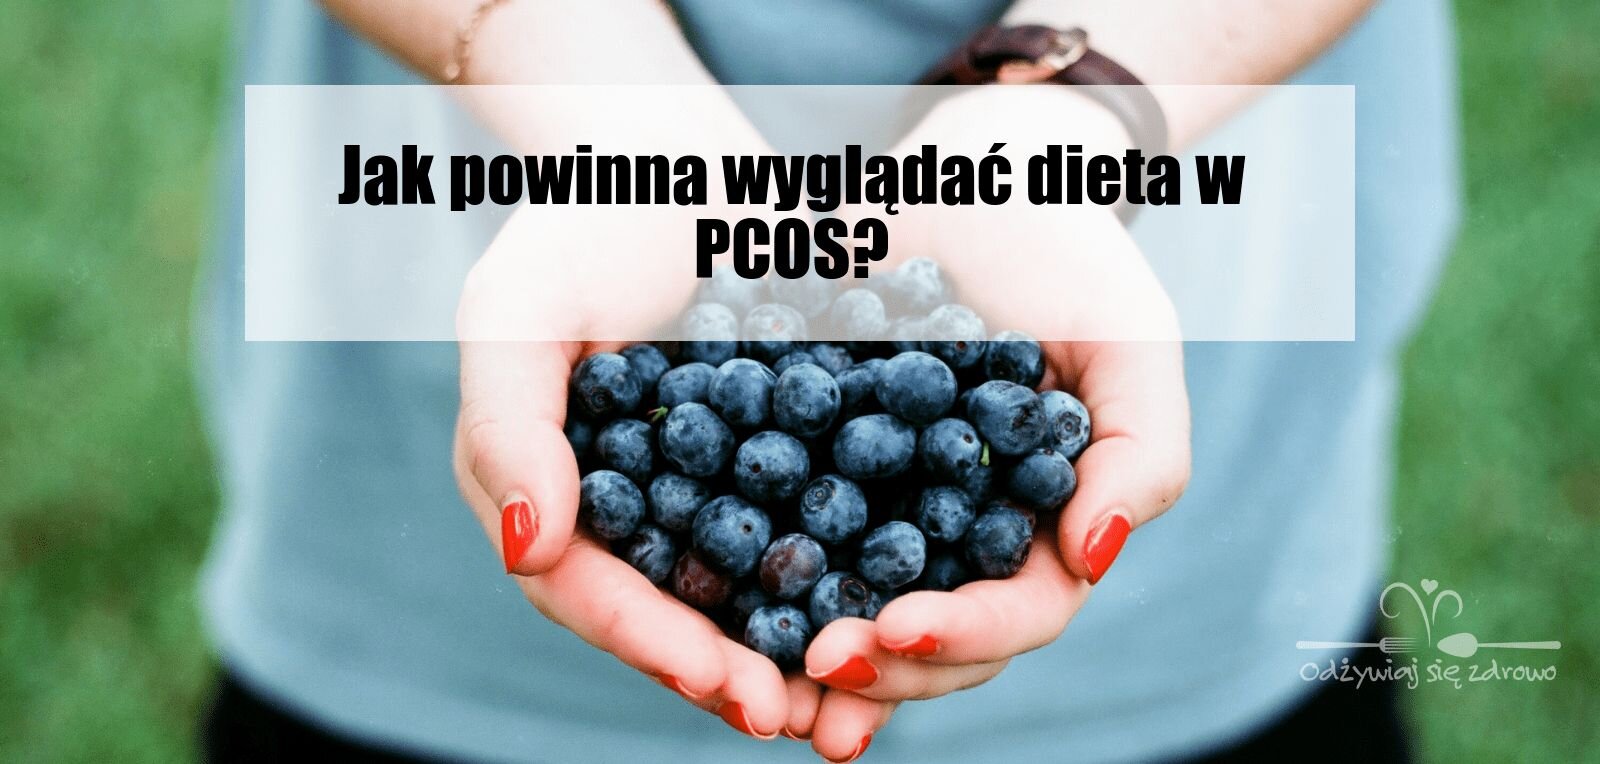 Jak powinna wyglądać dieta w PCOS?